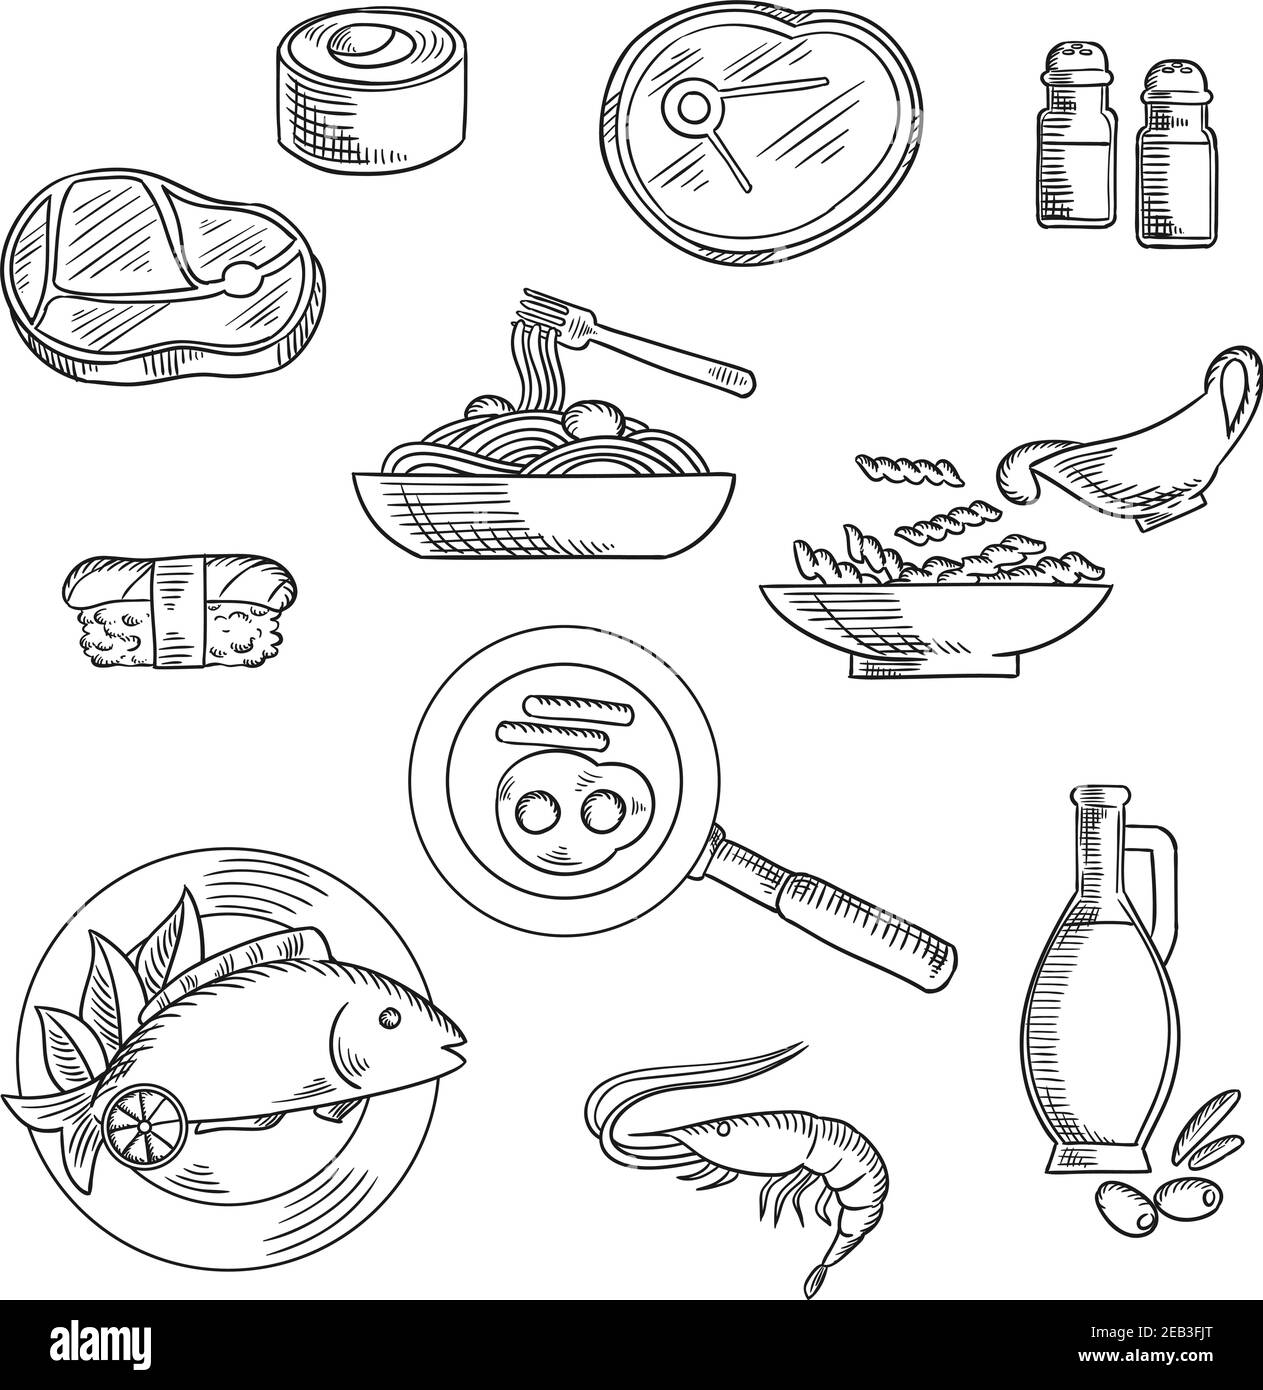 Gesunde Lebensmittel Skizze Symbole von Sushi-Rolle und Nigiri, Pasta und Spaghetti mit Sauce, rohes Rindfleisch Steaks, gegrillter Fisch, Garnelen, Spiegeleier mit Würstchen, o Stock Vektor